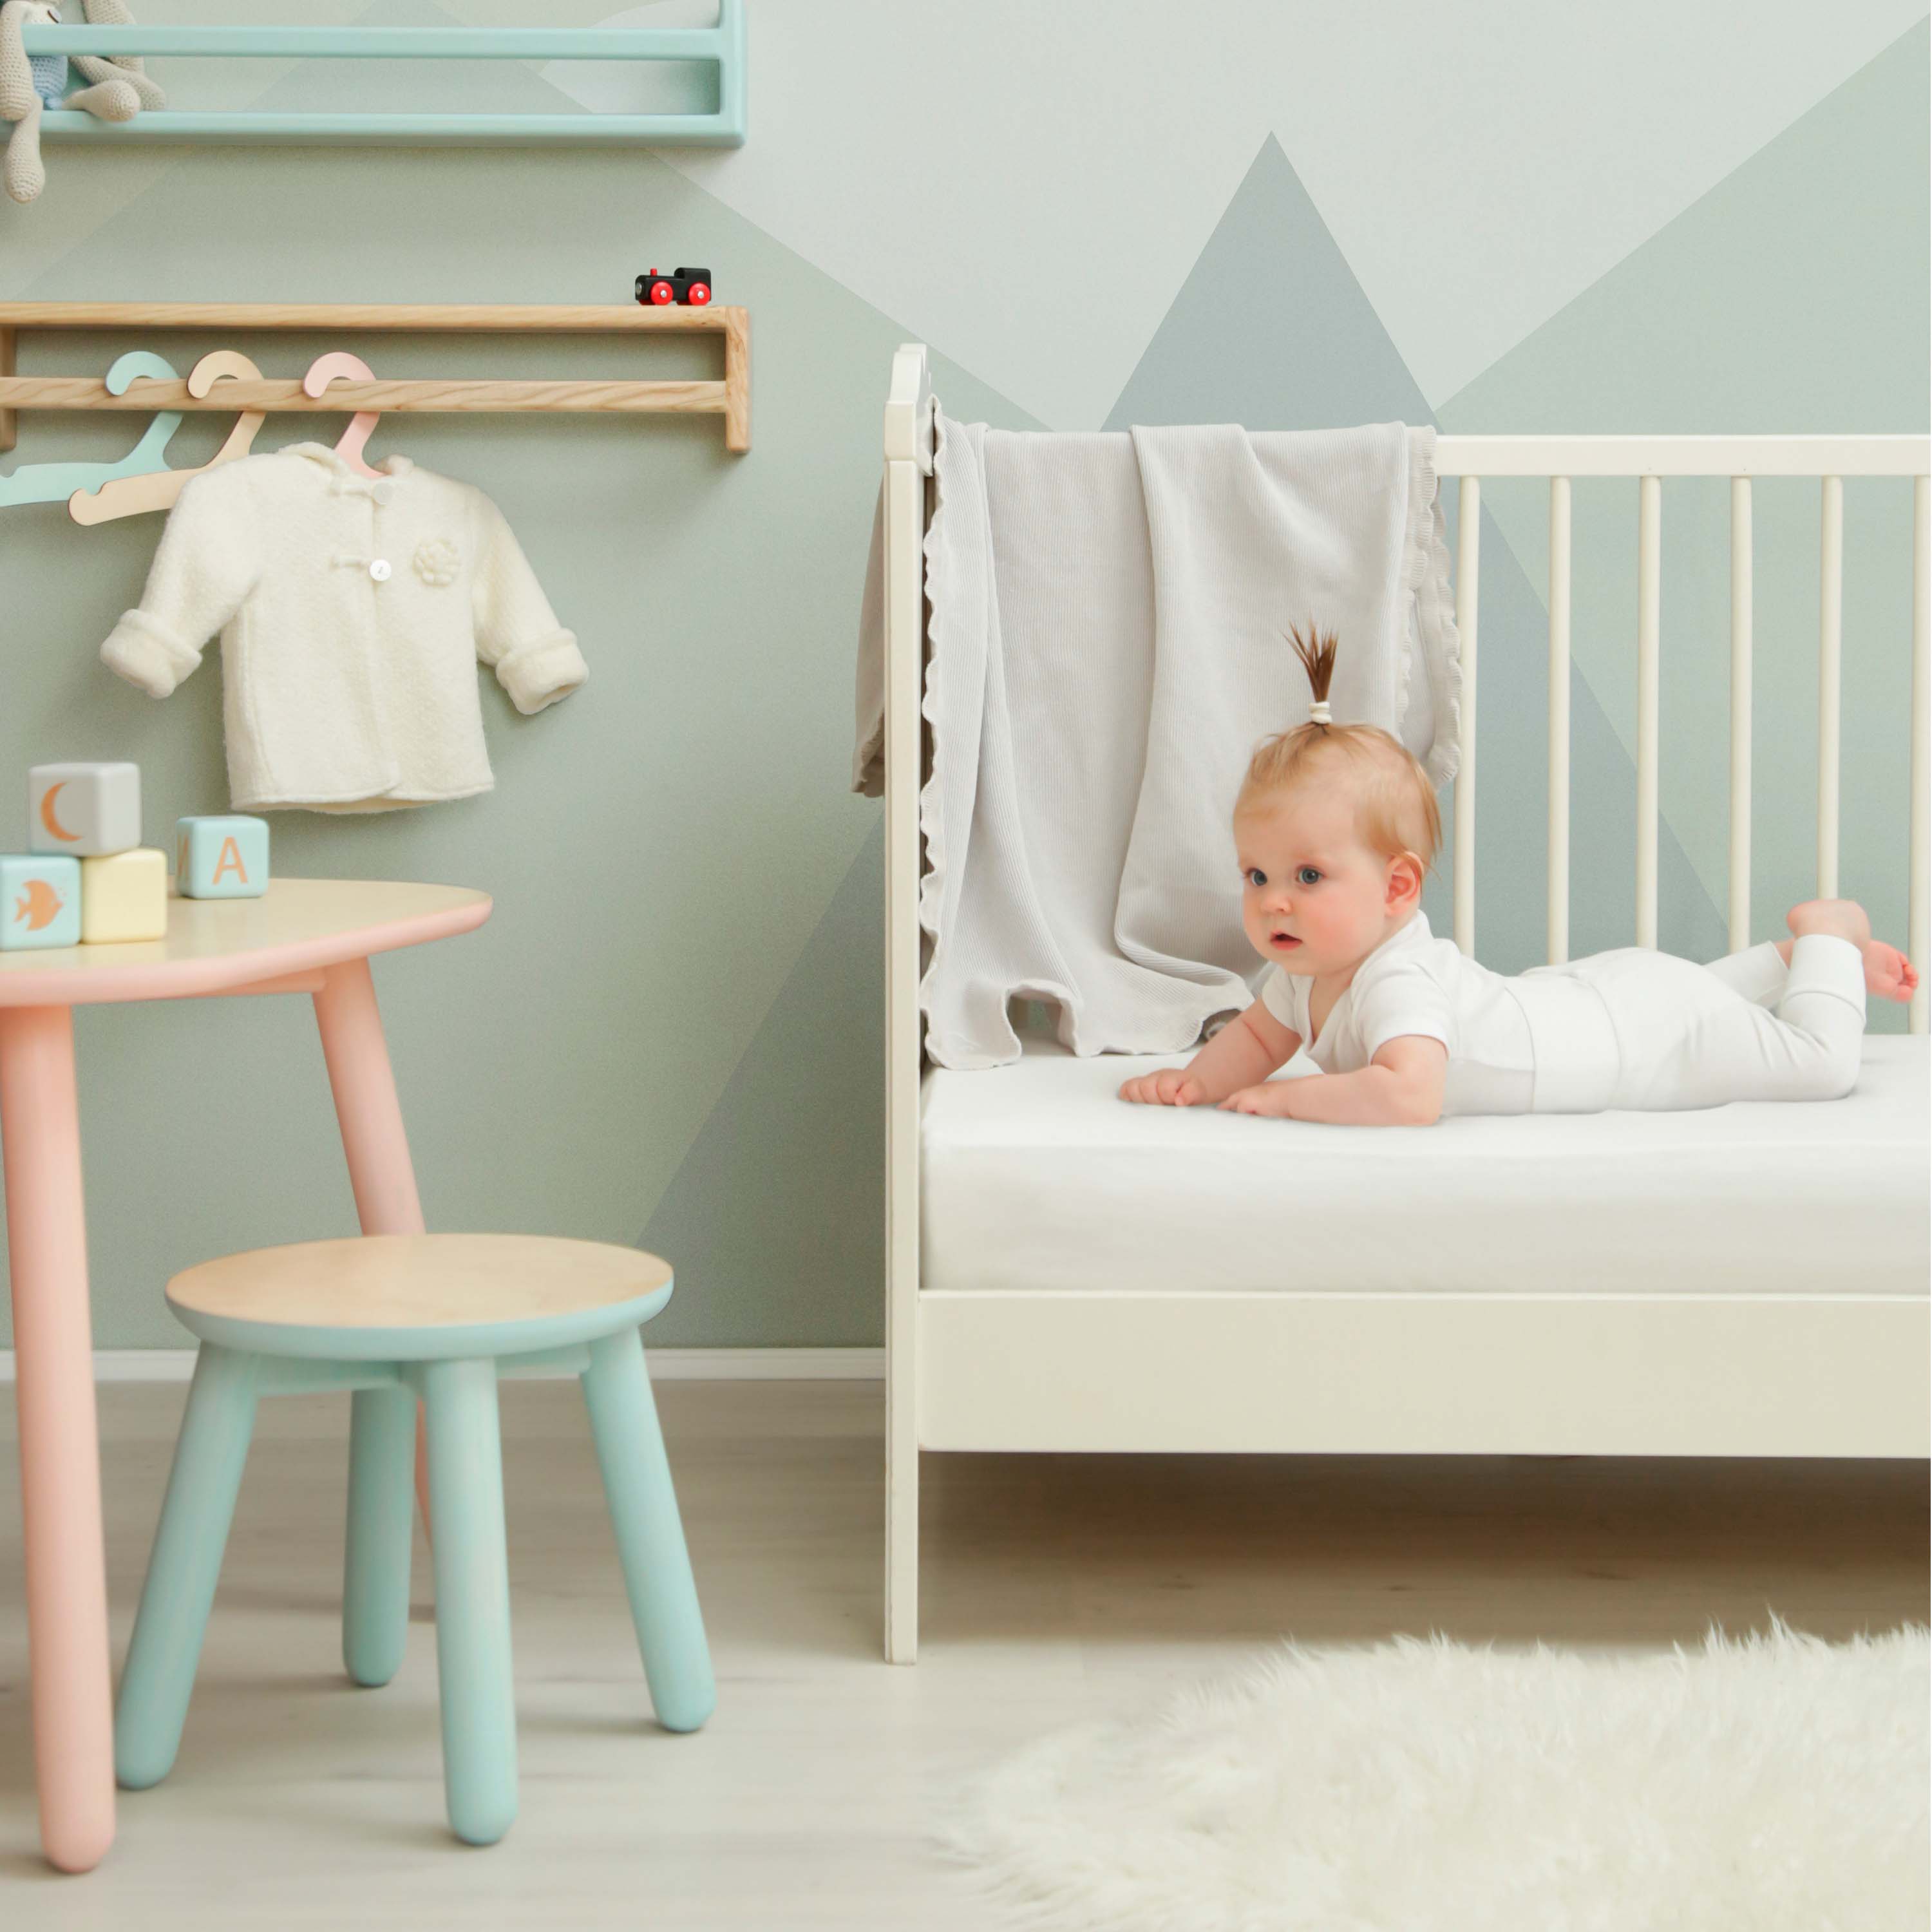 Traumhaft gut Schlafen – Kinder-/Baby Spannbetttuch, hochwertige Qualität, trocknergeeignet 